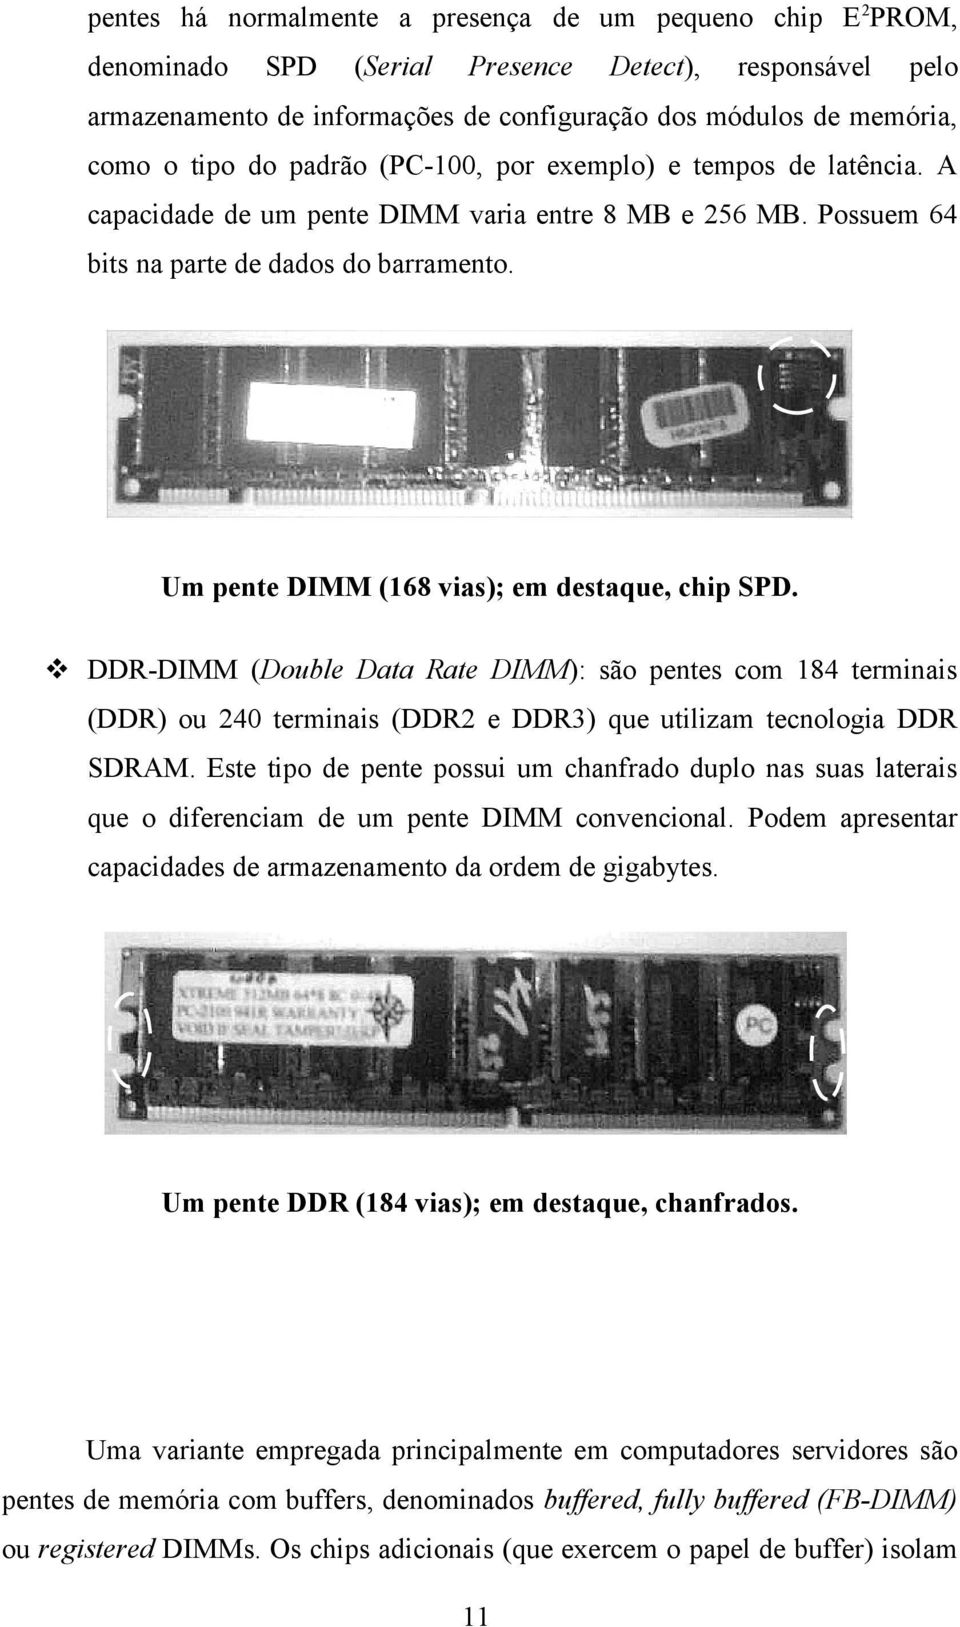 Um pente DIMM (168 vias); em destaque, chip SPD. DDR-DIMM (Double Data Rate DIMM): são pentes com 184 terminais (DDR) ou 240 terminais (DDR2 e DDR3) que utilizam tecnologia DDR SDRAM.